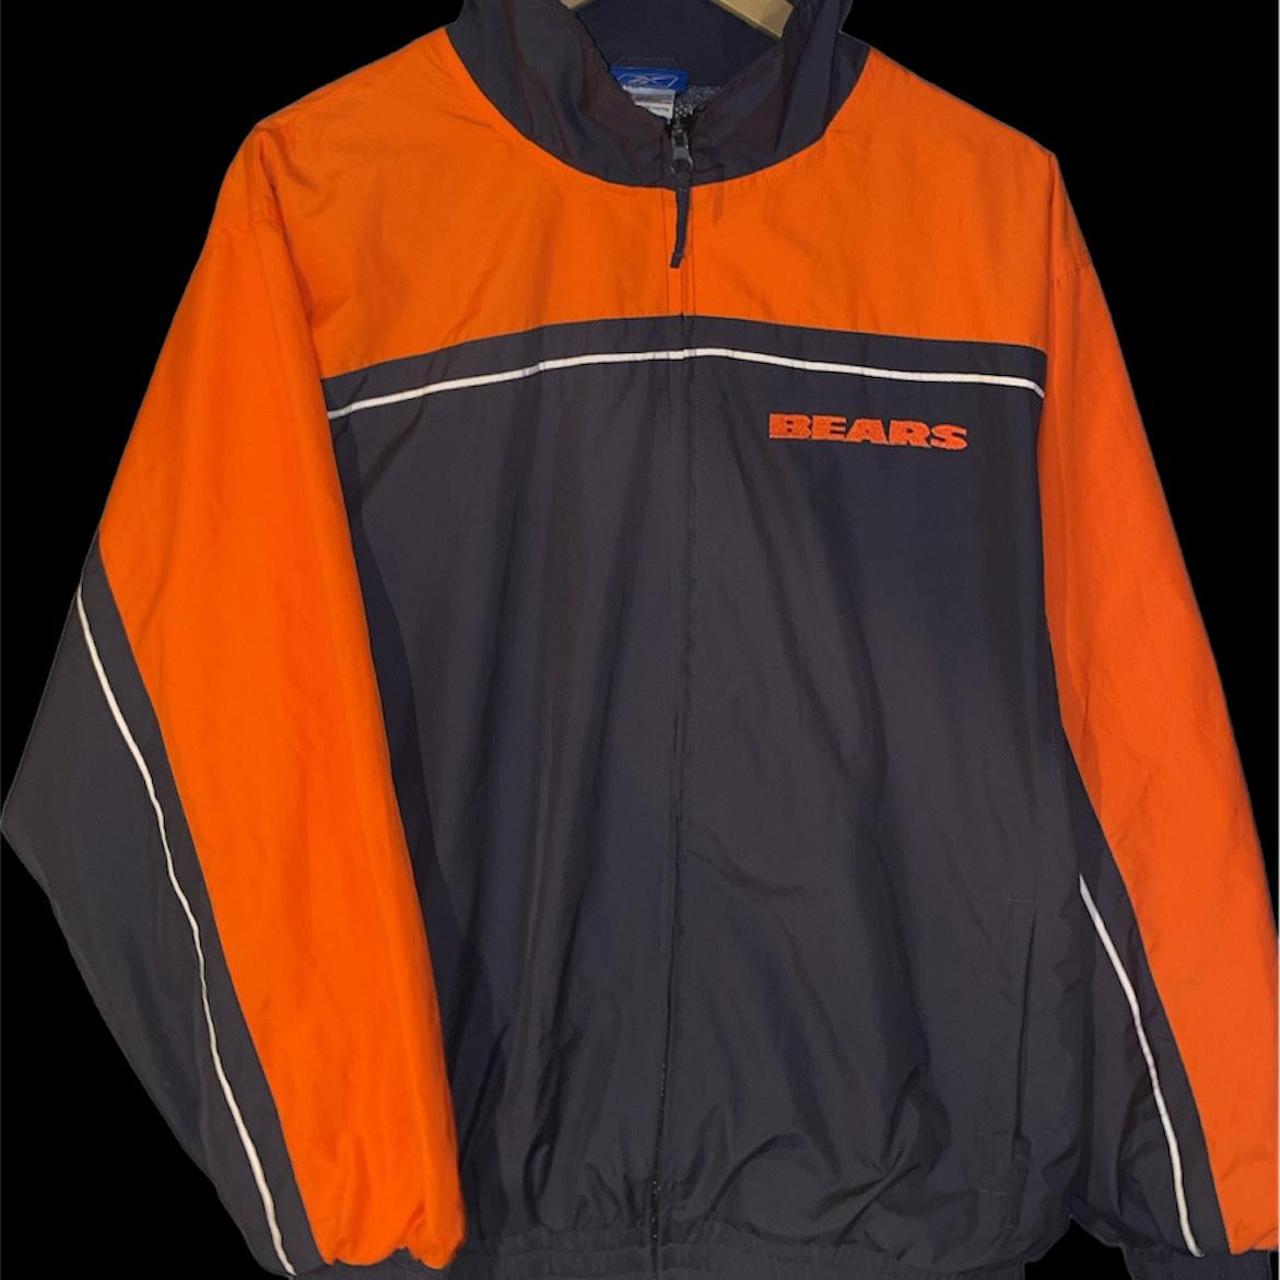 Reebok Men's Orange and Navy Sweatshirt | Depop